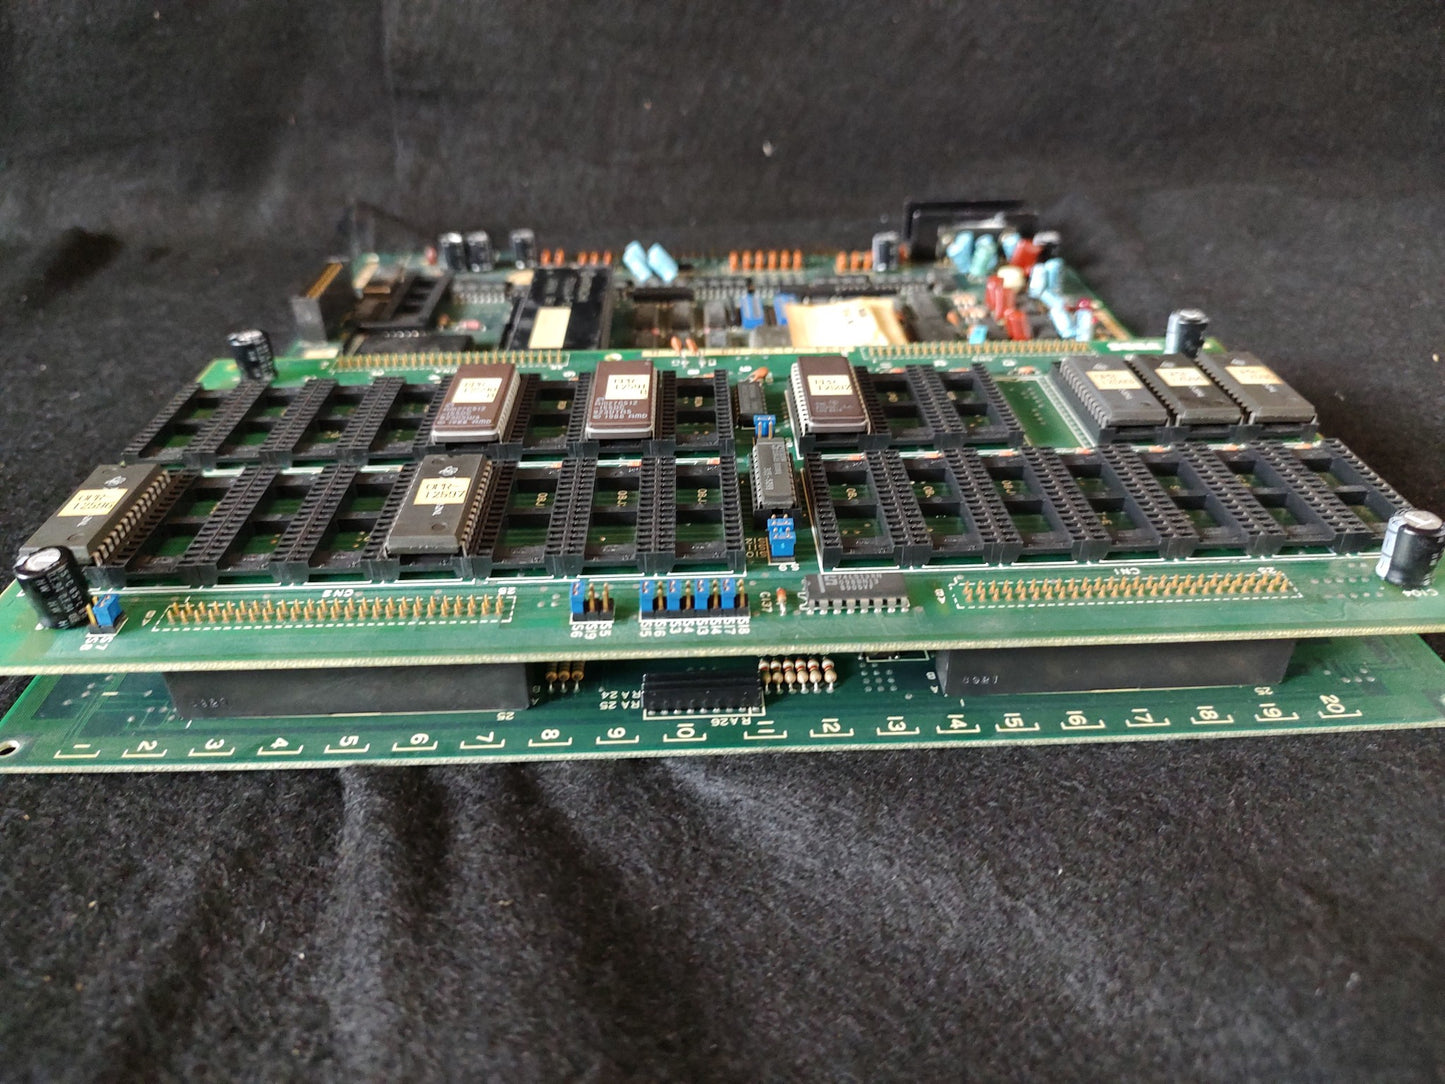 FLASH POINT SEGA System 16/24 Arcade PCB System JAMMA Board, Working-f0803-